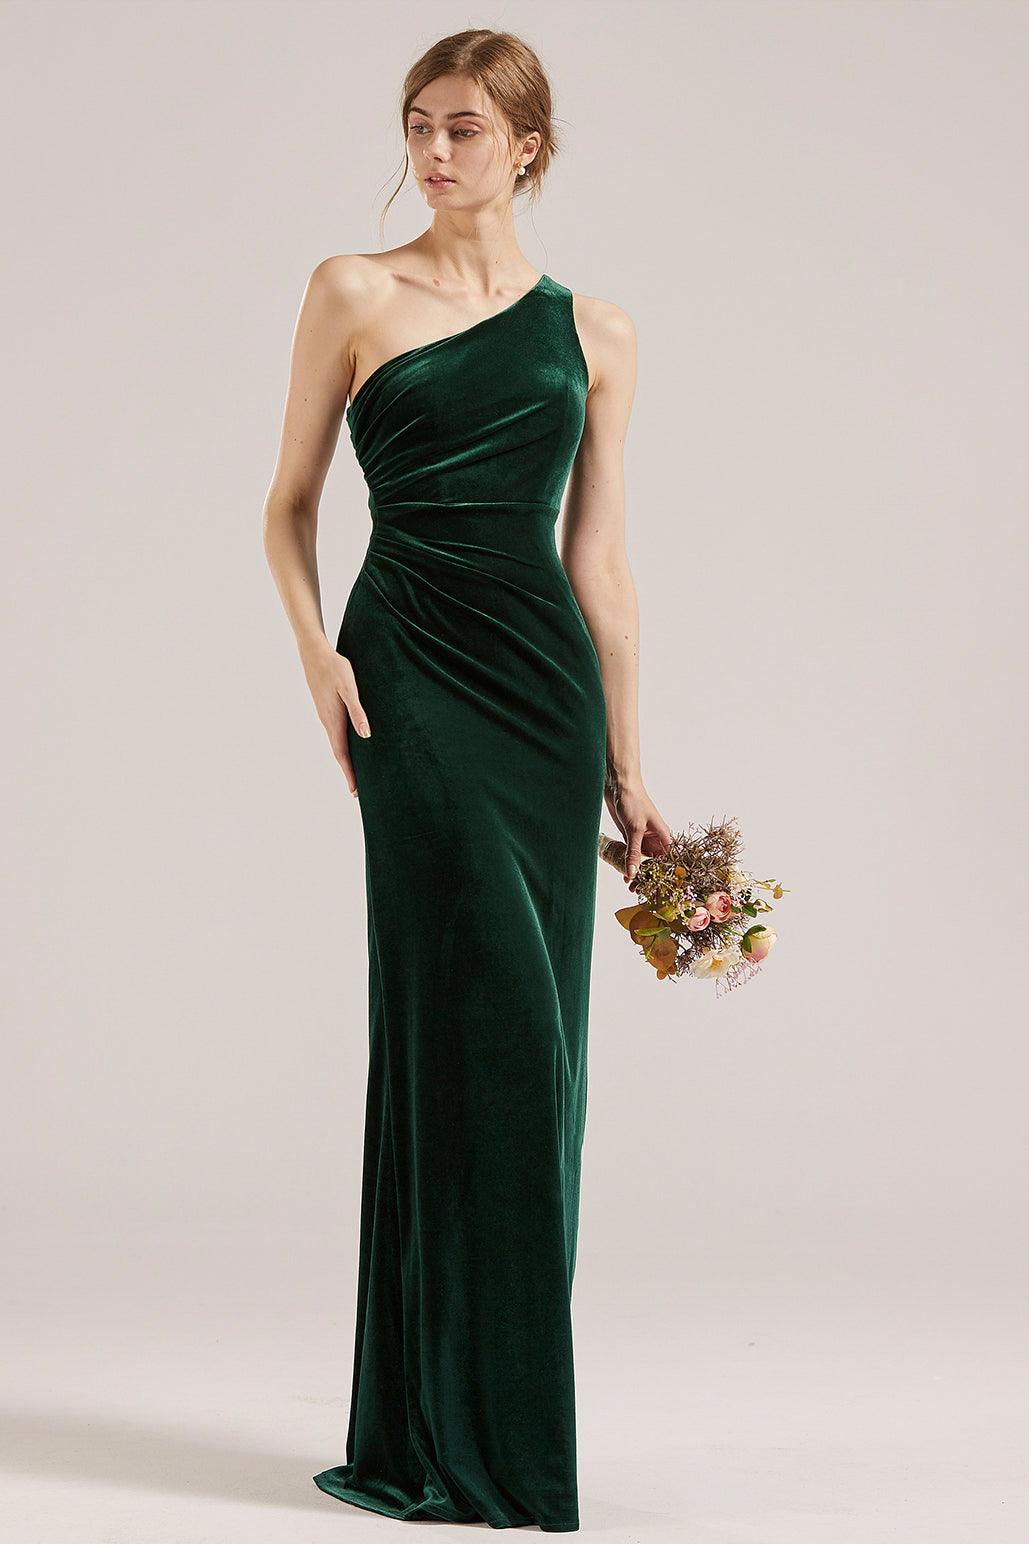 One Shoulder Dress LV553 velvet bridesmaid dress made to order custom ...